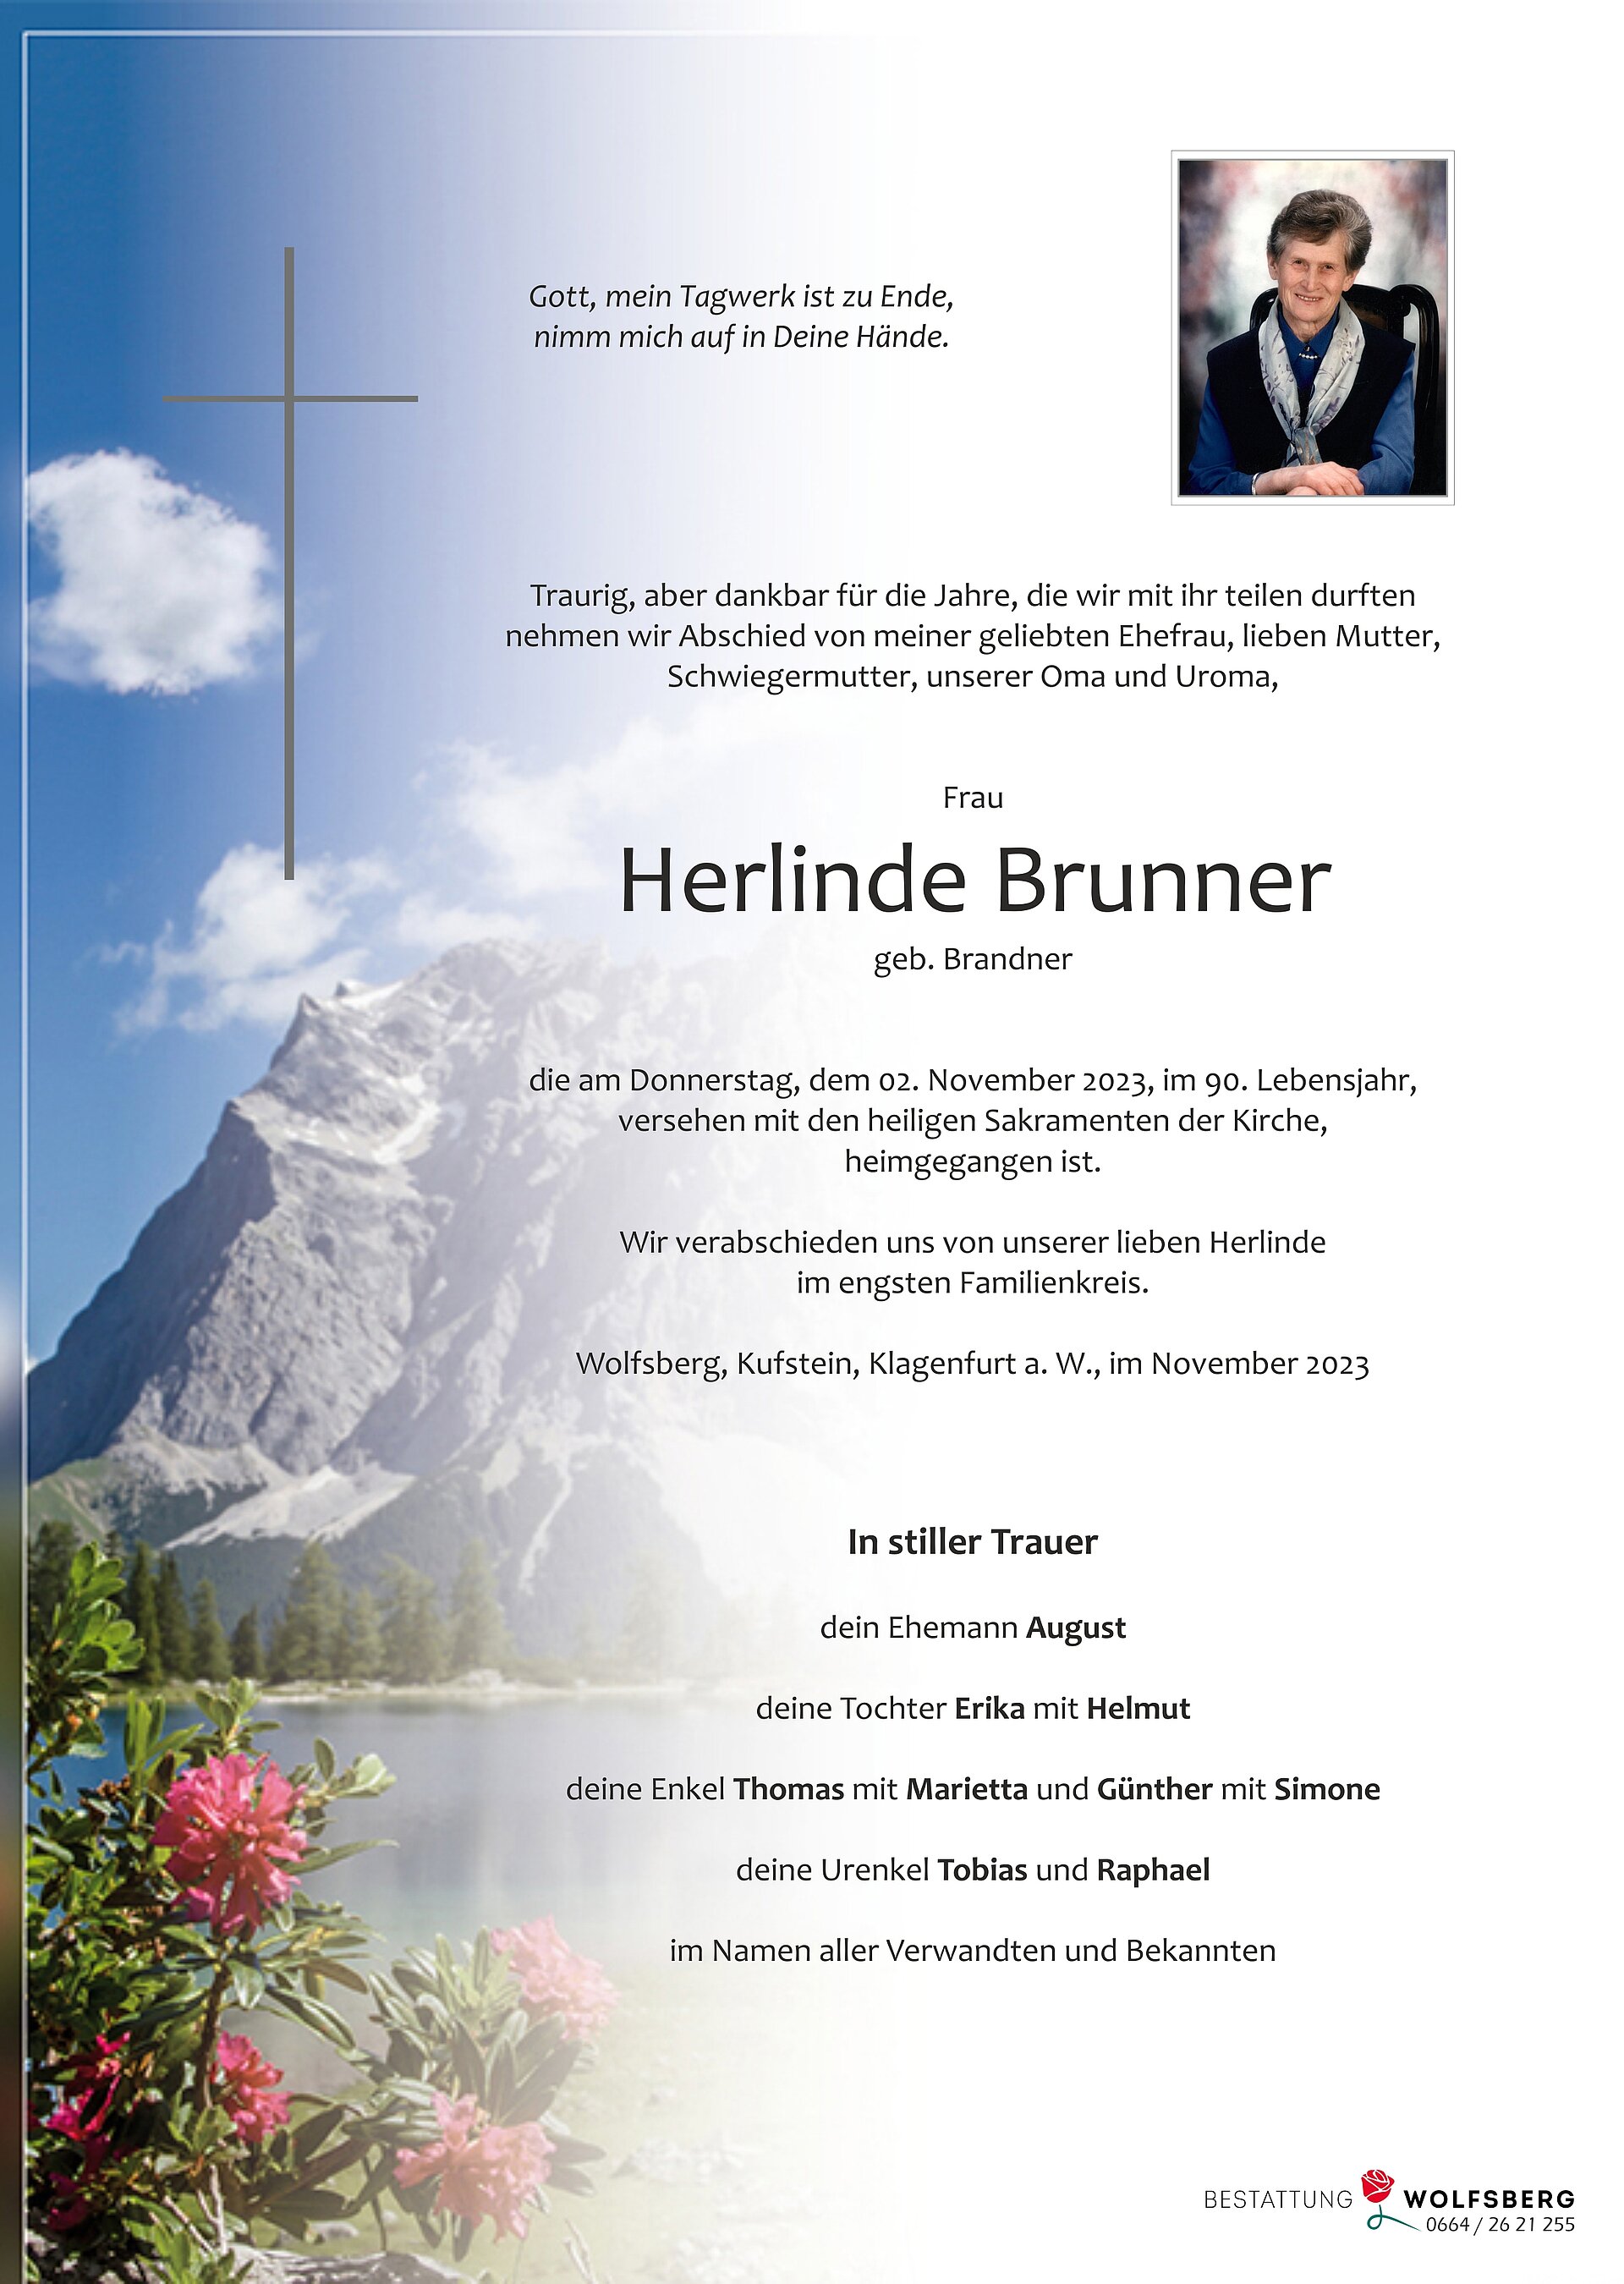 Herlinde Brunner EP 9256.jpg